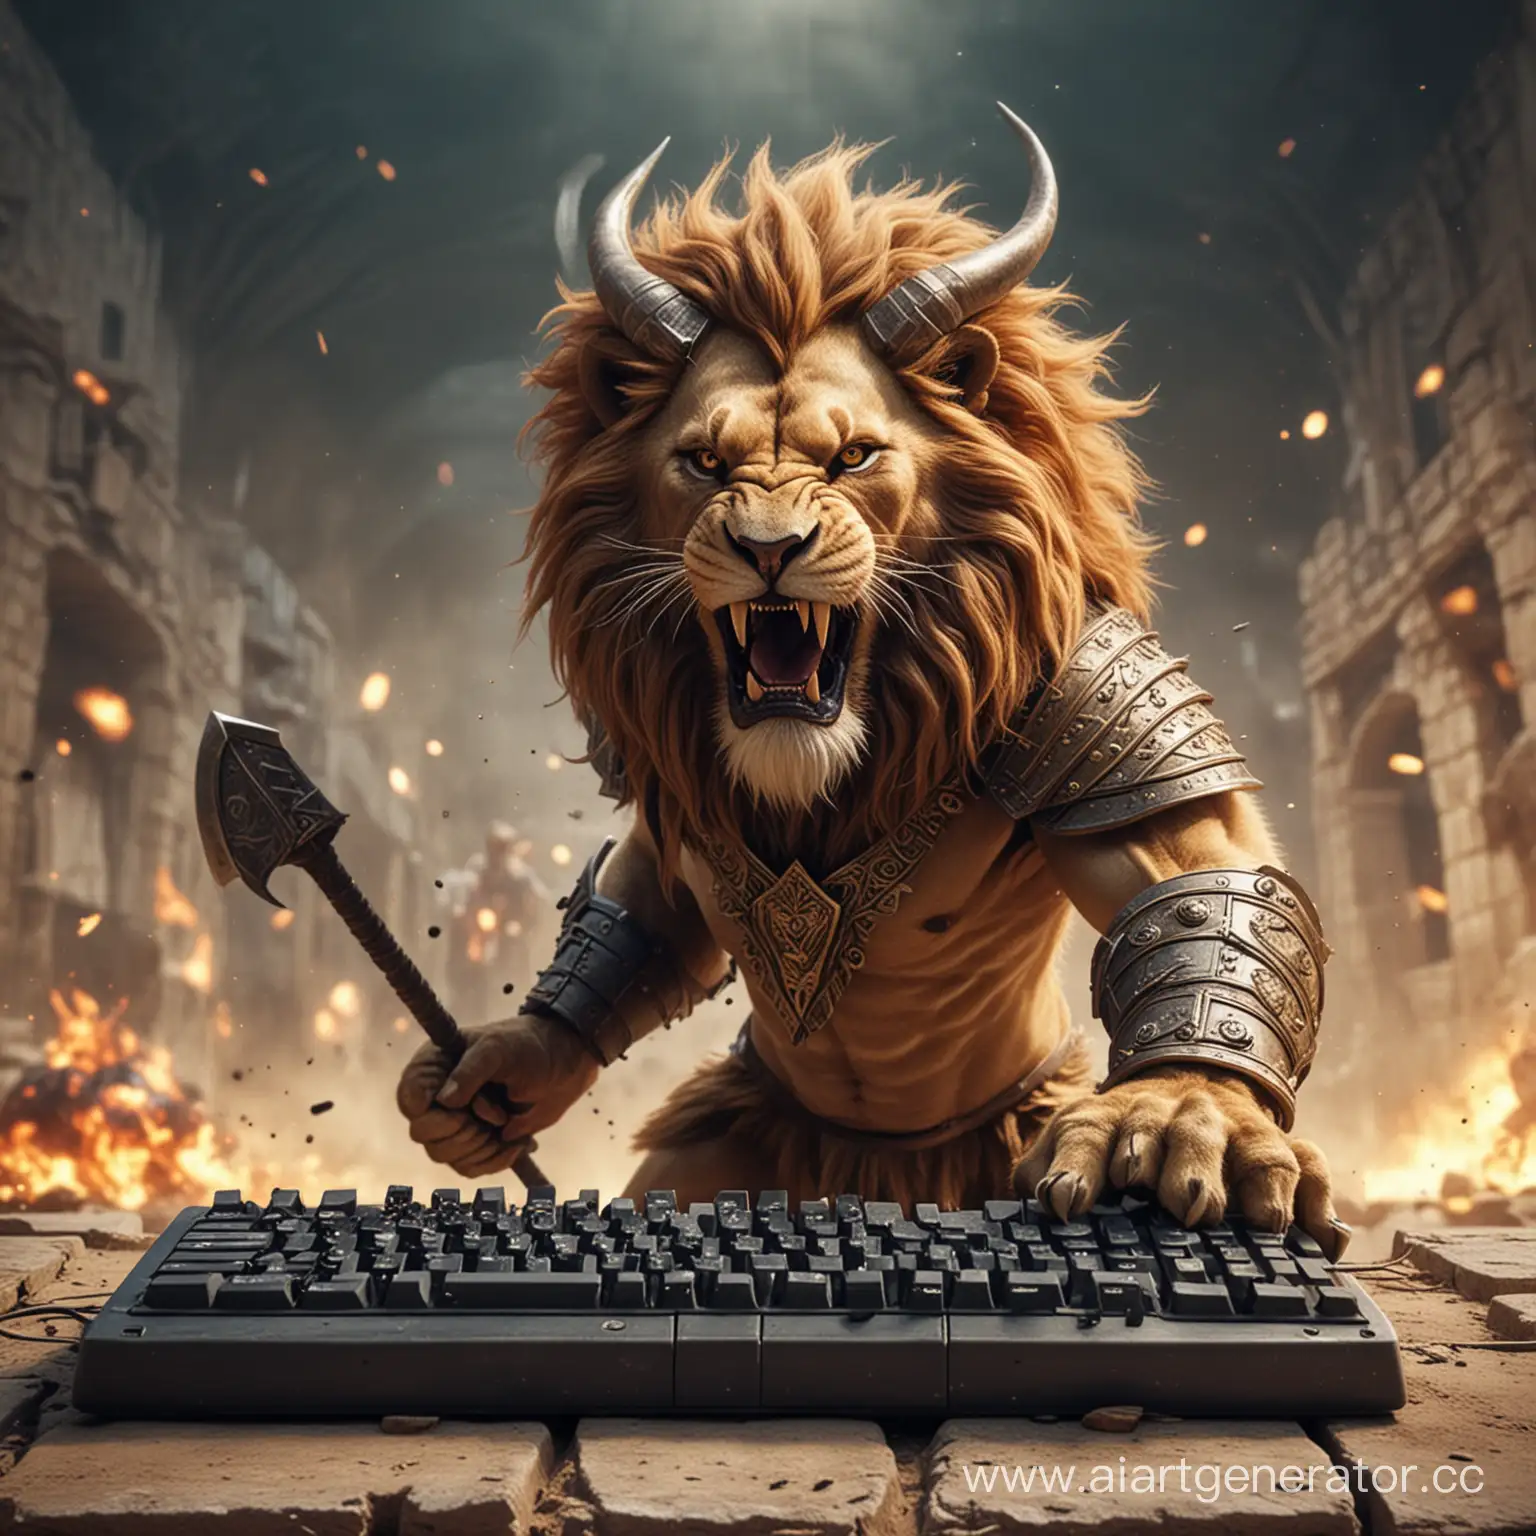 KeyboardWielding-Lion-Battling-Horned-Foe-in-Arena